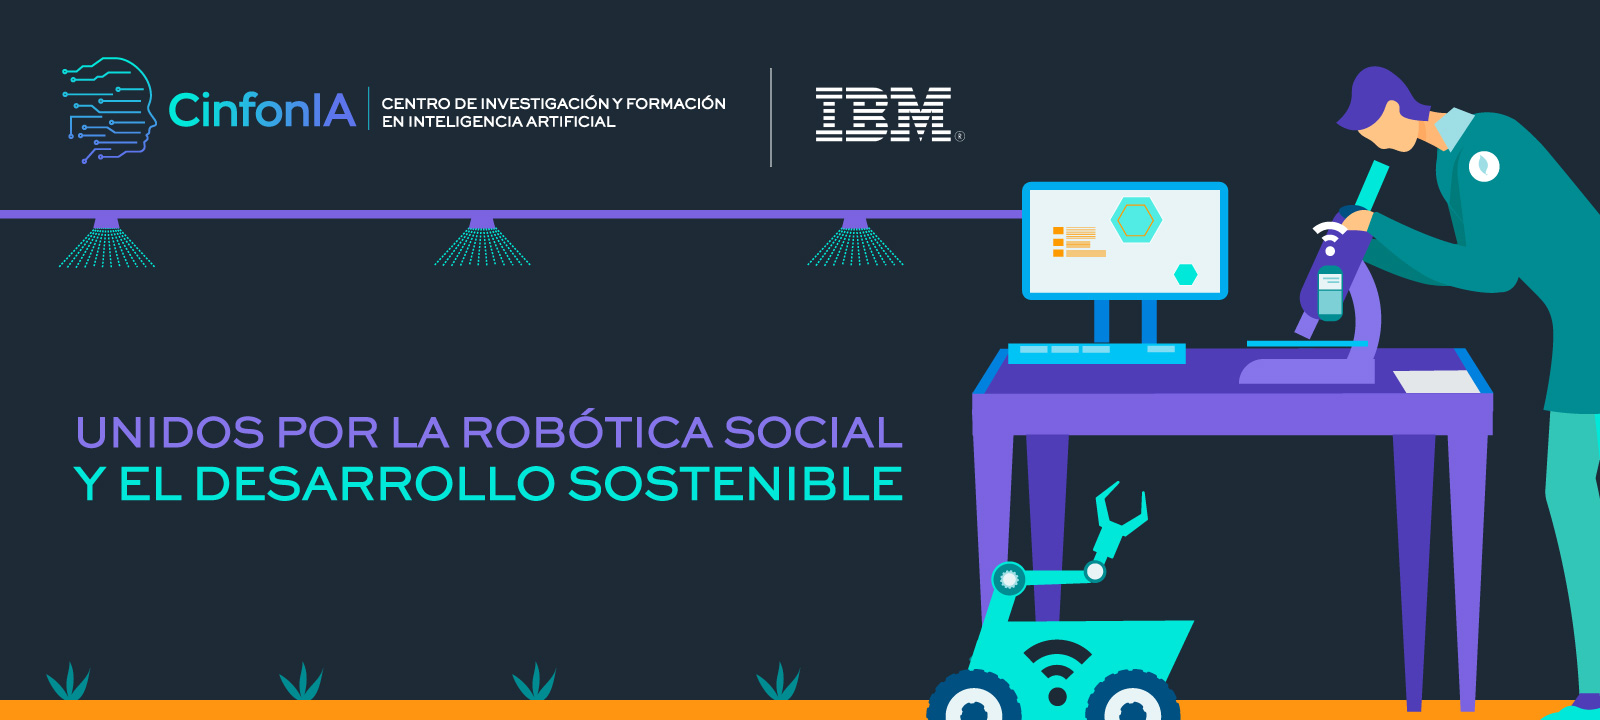 Universidad de los Andes desarrolla proyectos de robótica social, piscicultura y cambio climático con tecnologías de IBM